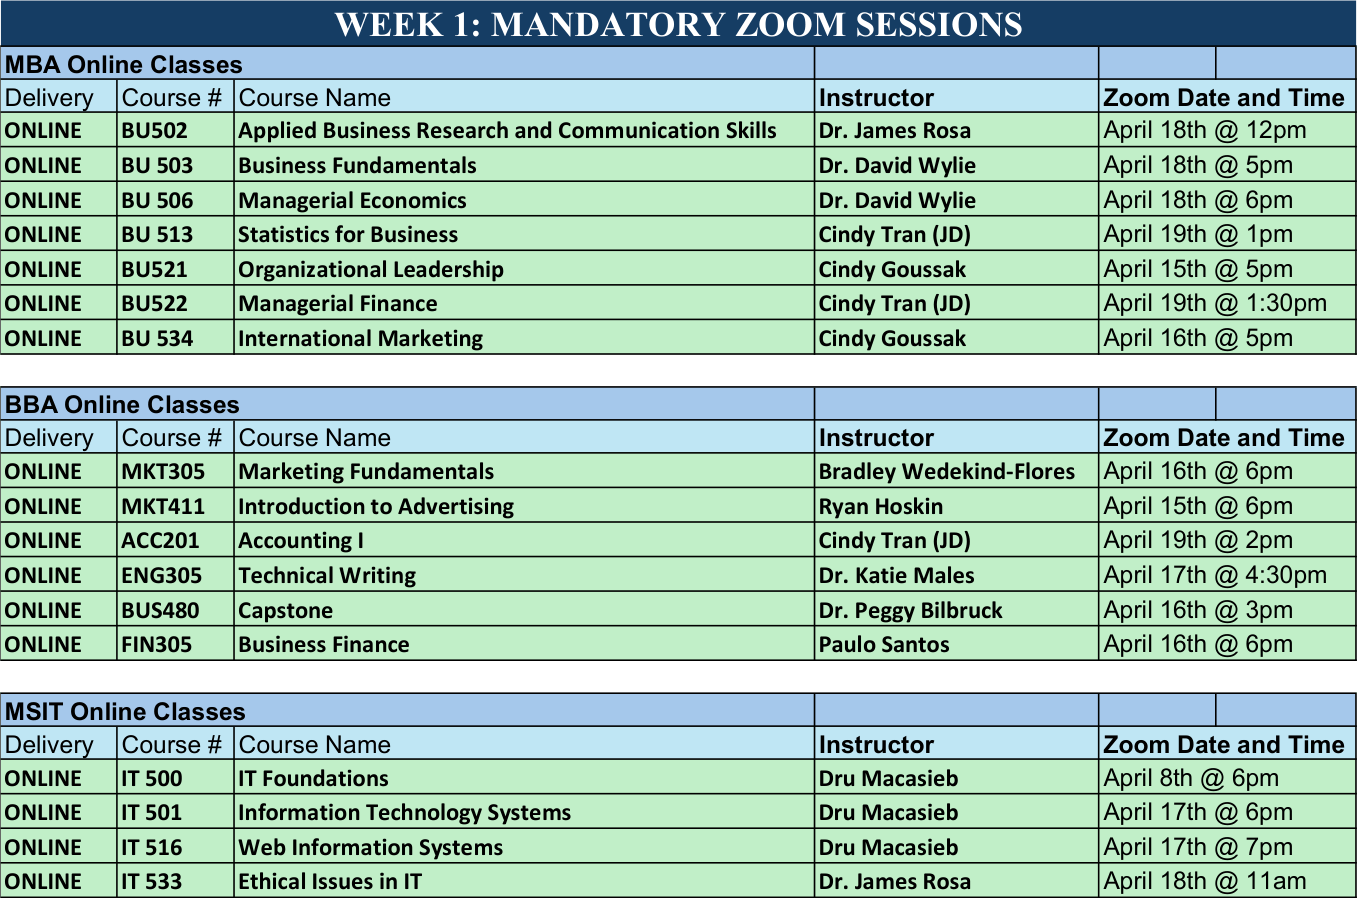 Week 1: Mandatory Zoom Sessions